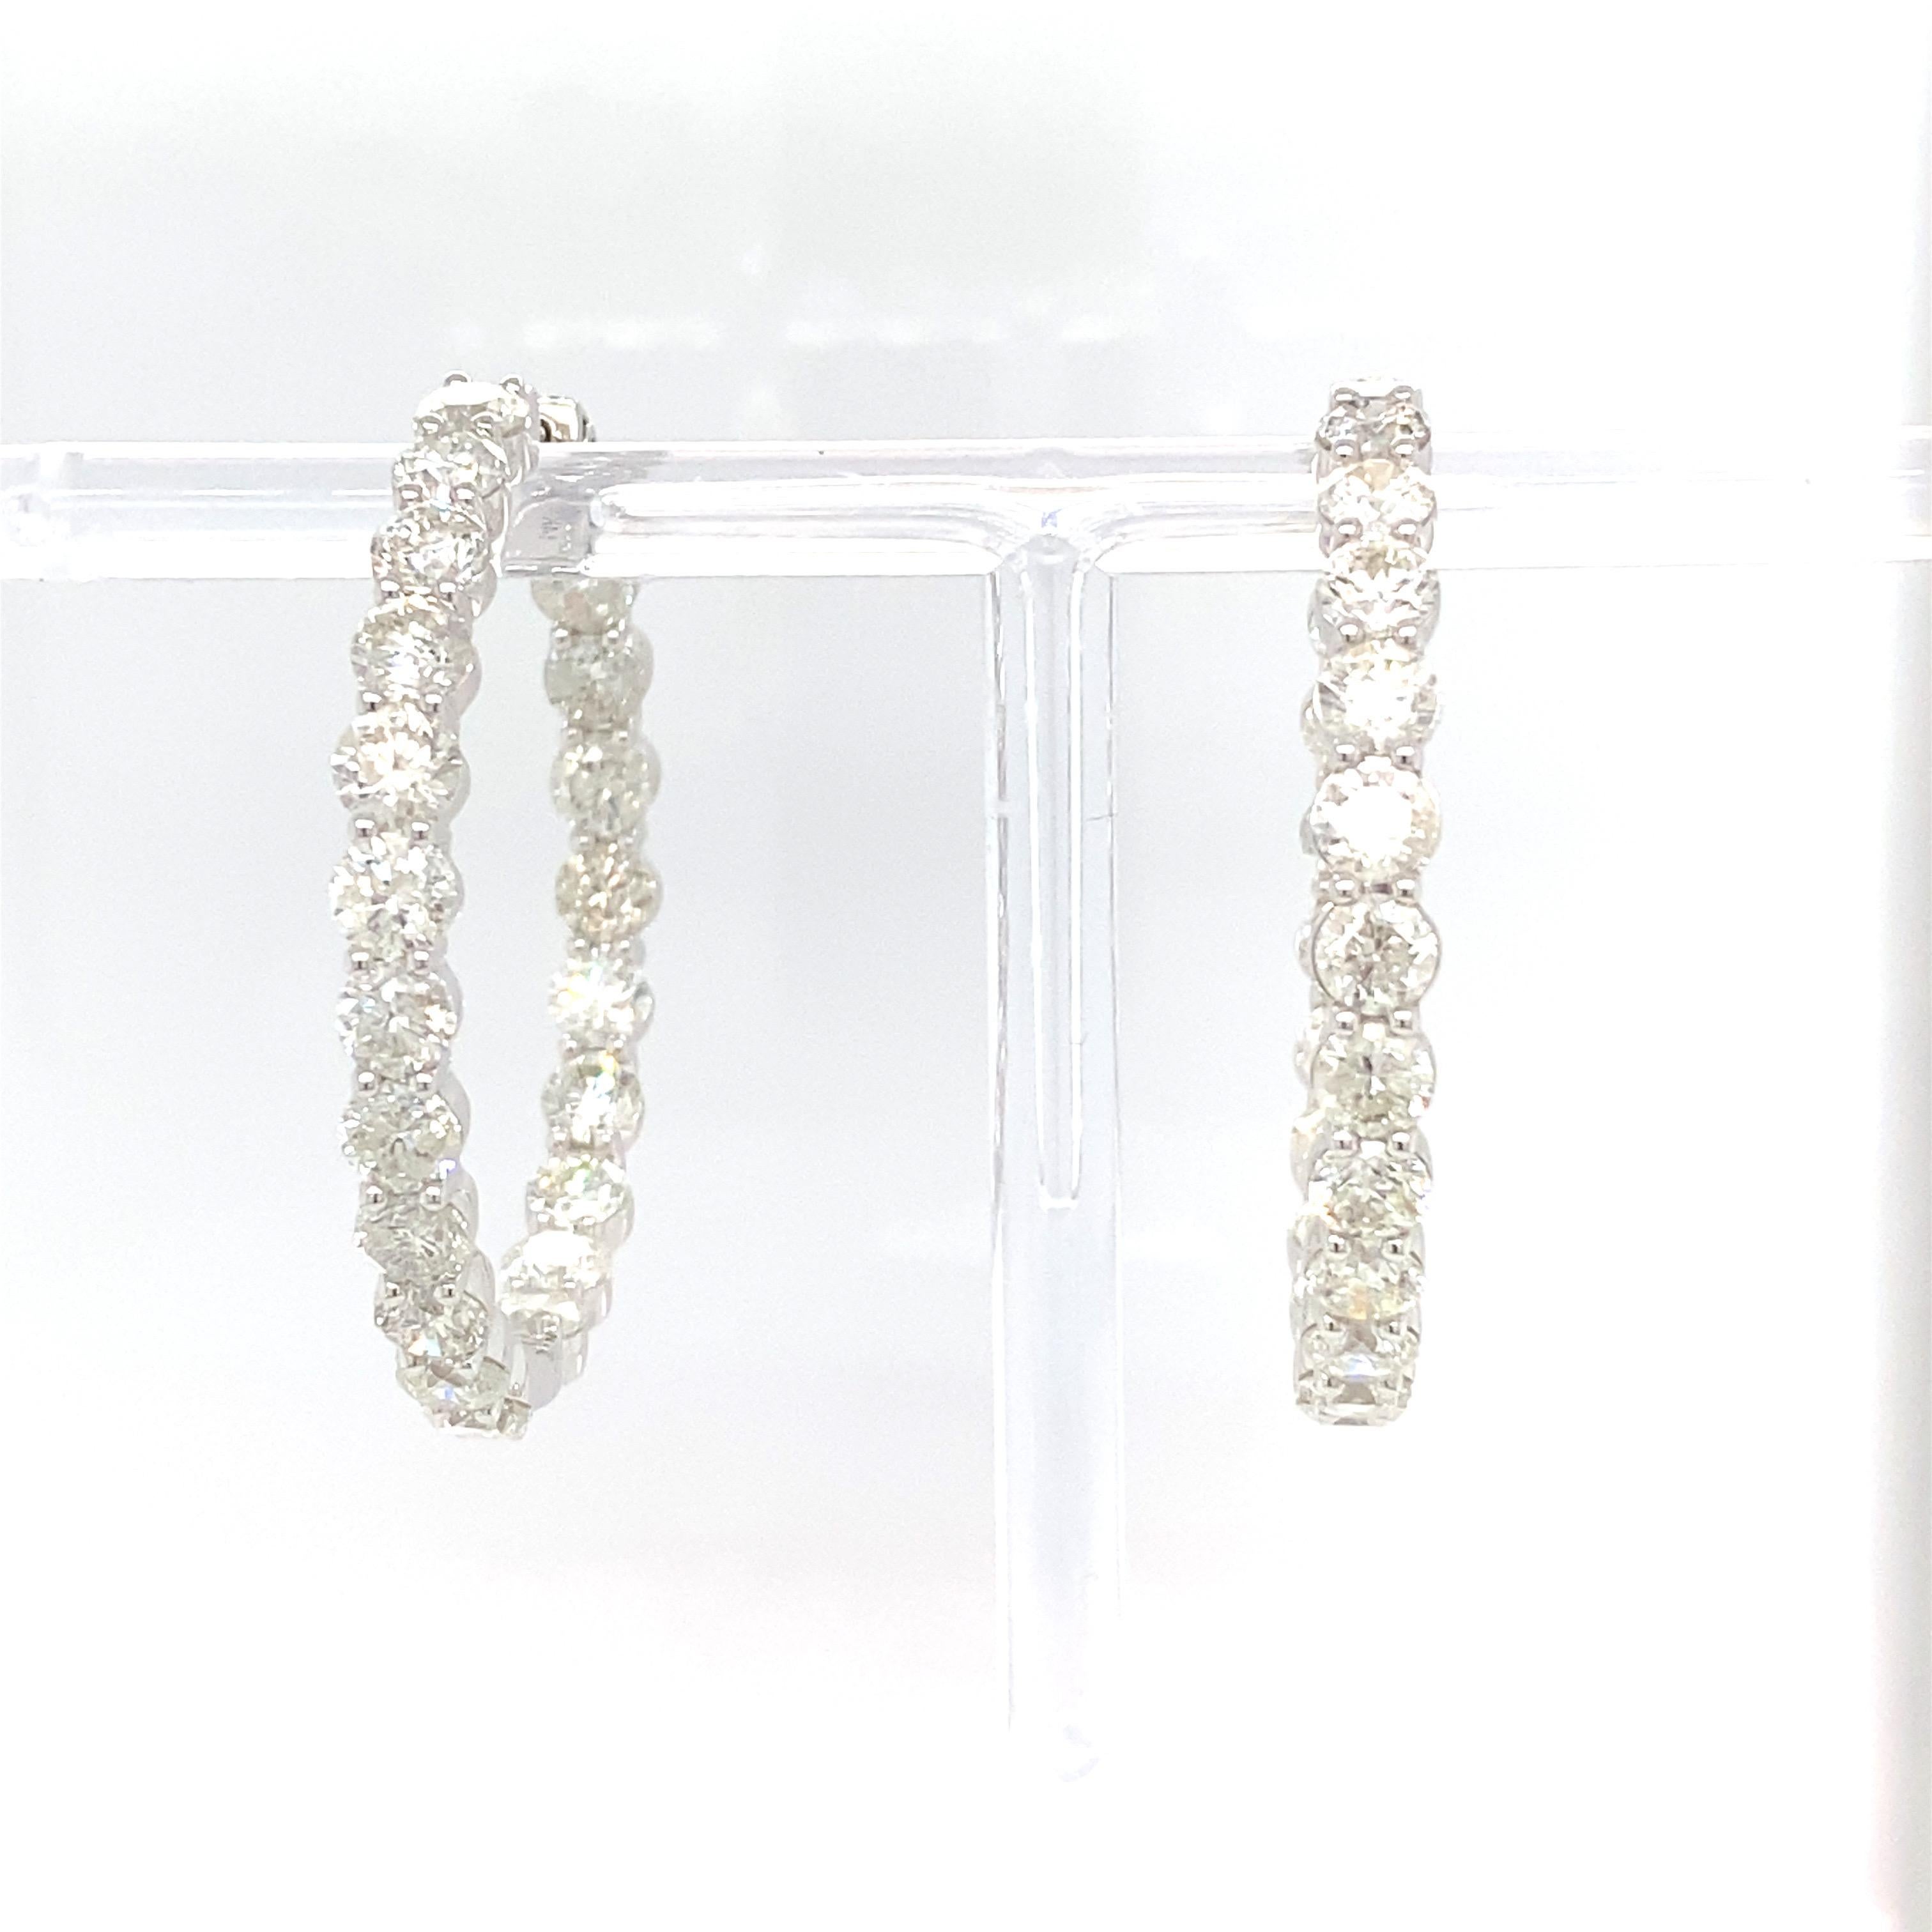 Weiße Diamanten im Brillantschliff wurden sorgfältig verarbeitet, um diese zeitlos eleganten, nach innen gebogenen Ohrringe zu kreieren. Er ist in Weißgold gefasst.
Diamant: 12,88 Karat
Gold: 14K Weiß 